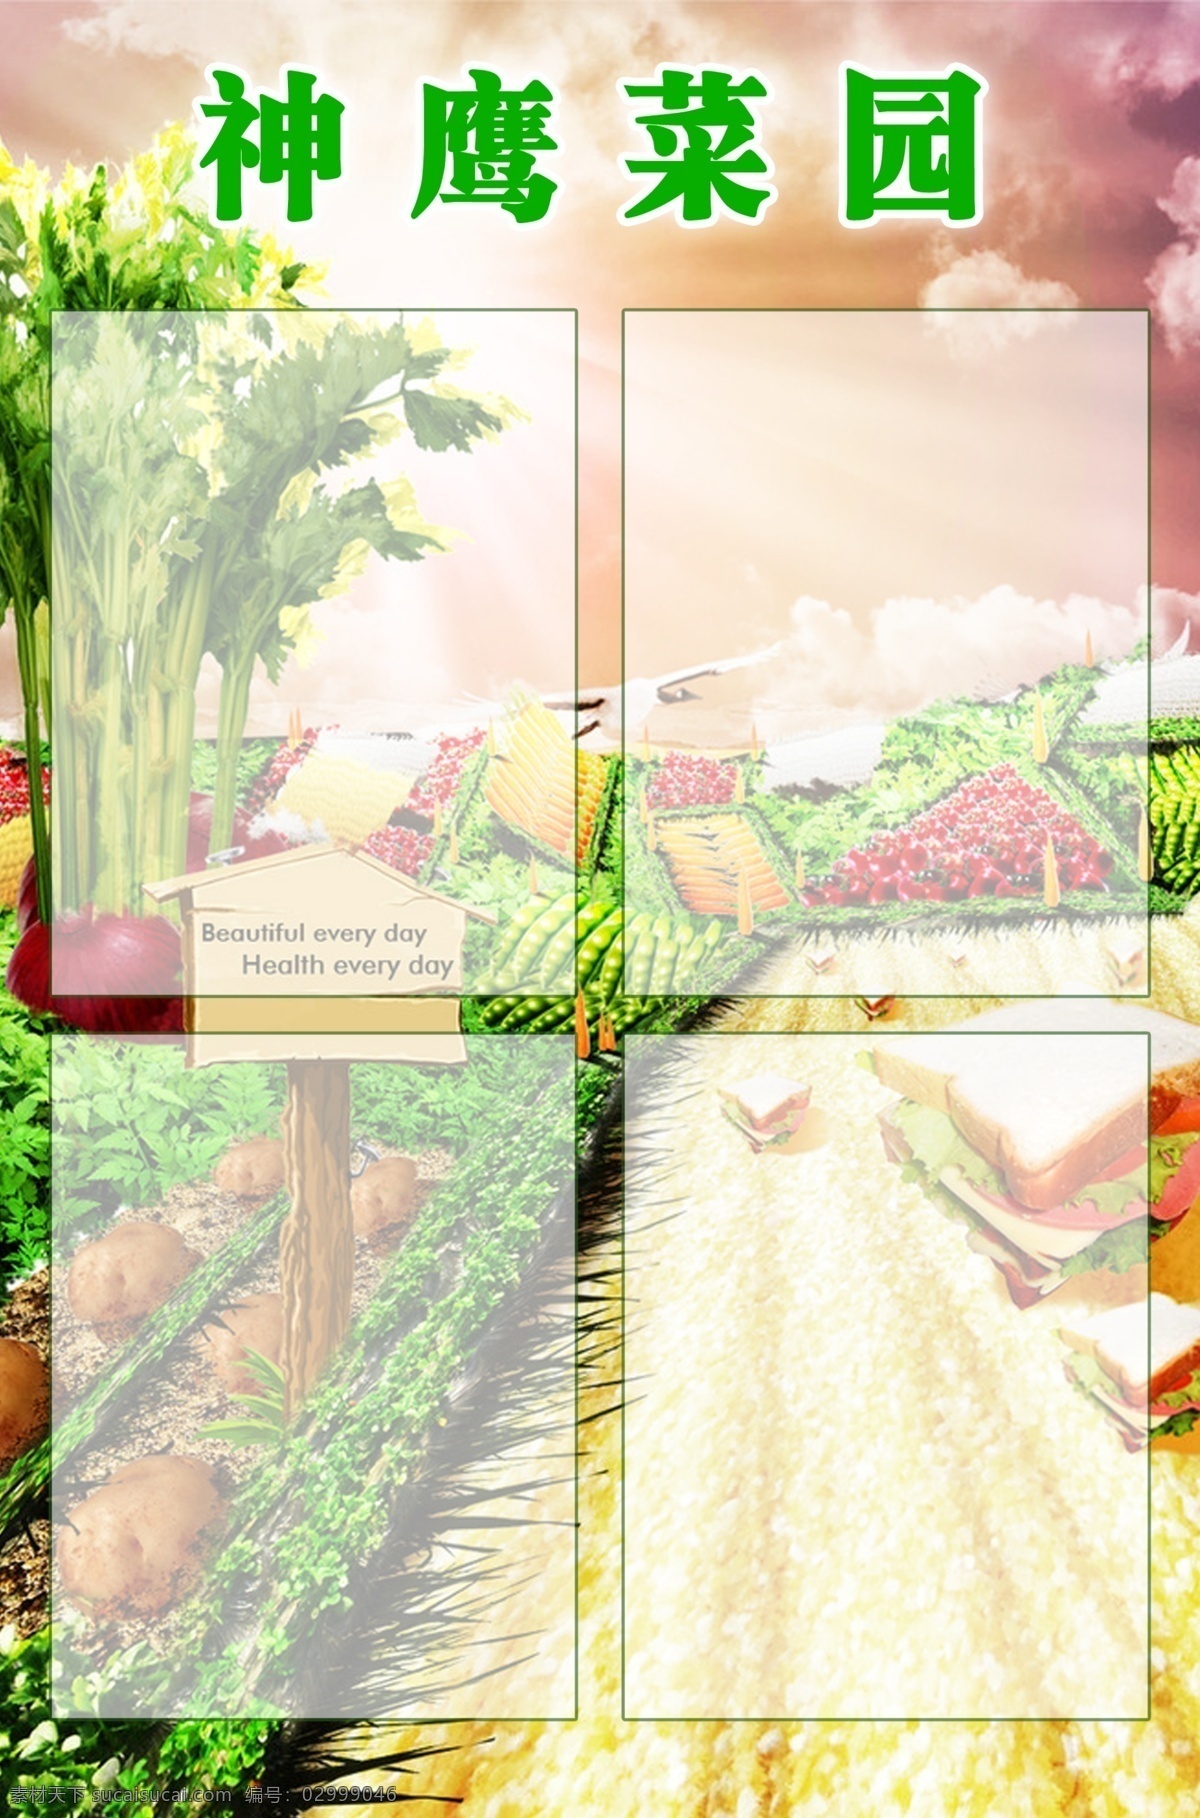 神鹰菜园 字 菜园 天空 蔬菜 广告设计模板 源文件